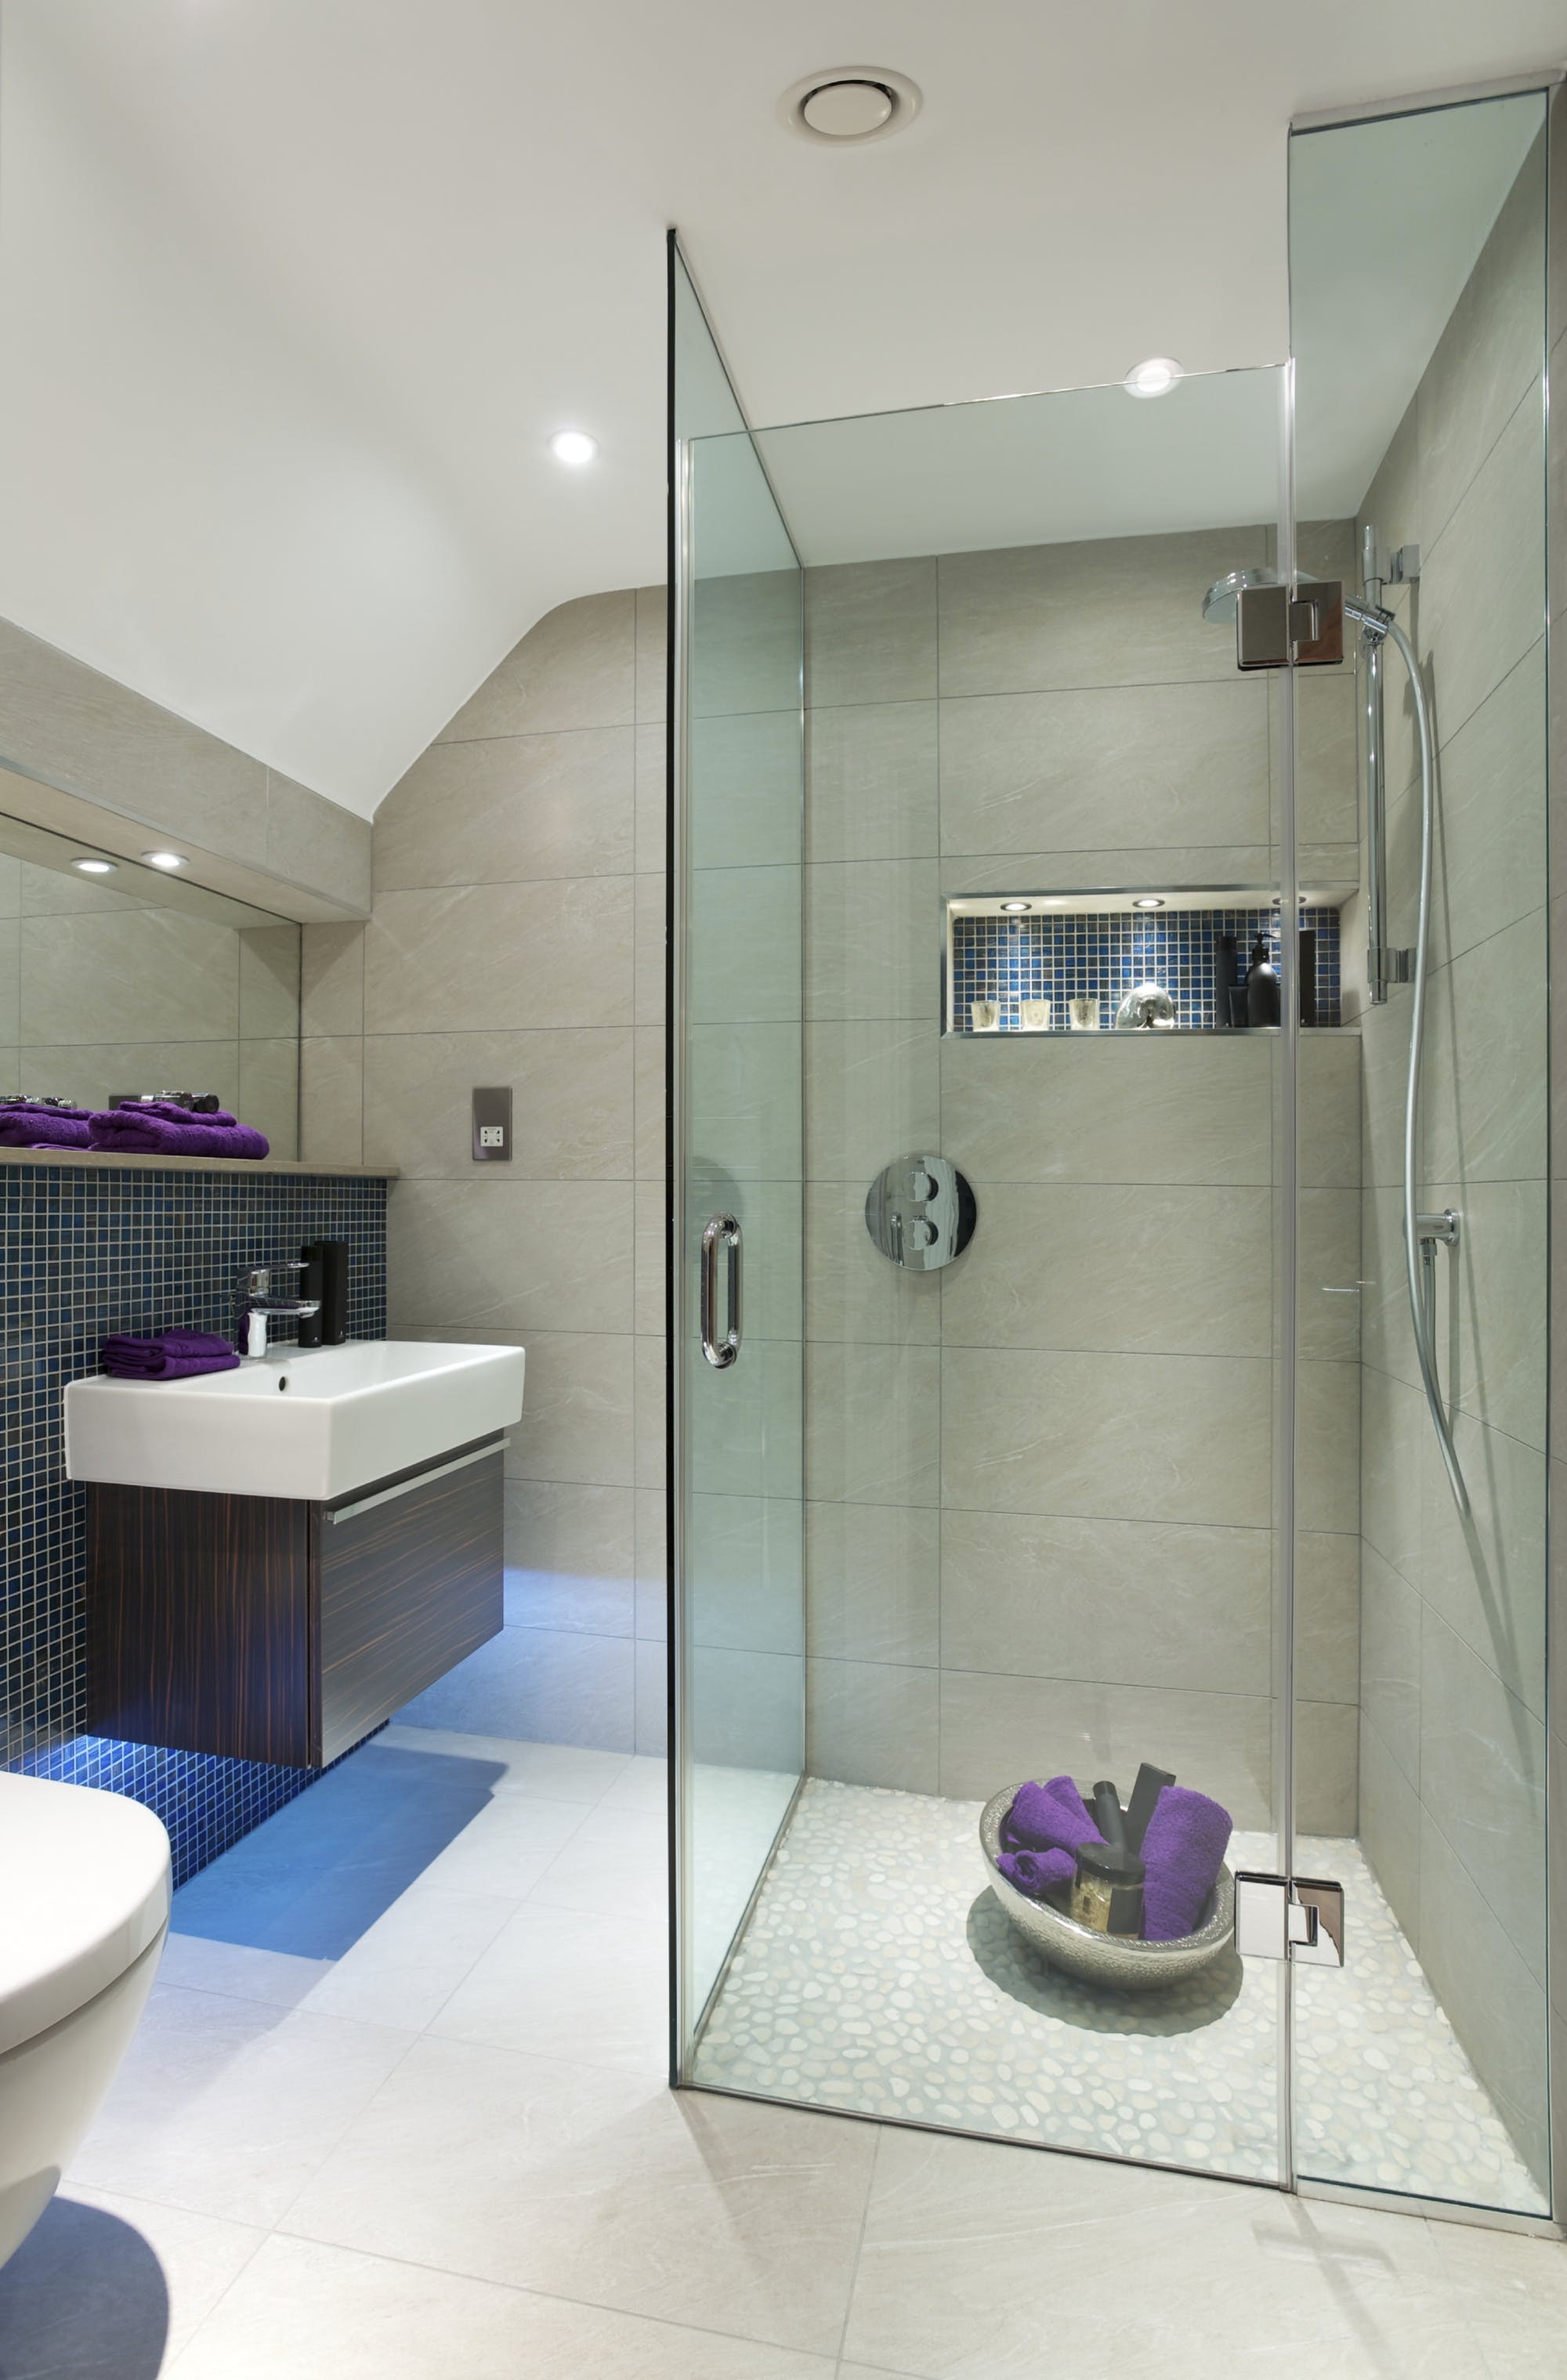 En-suite Bathroom Ideas | More Bathrooms